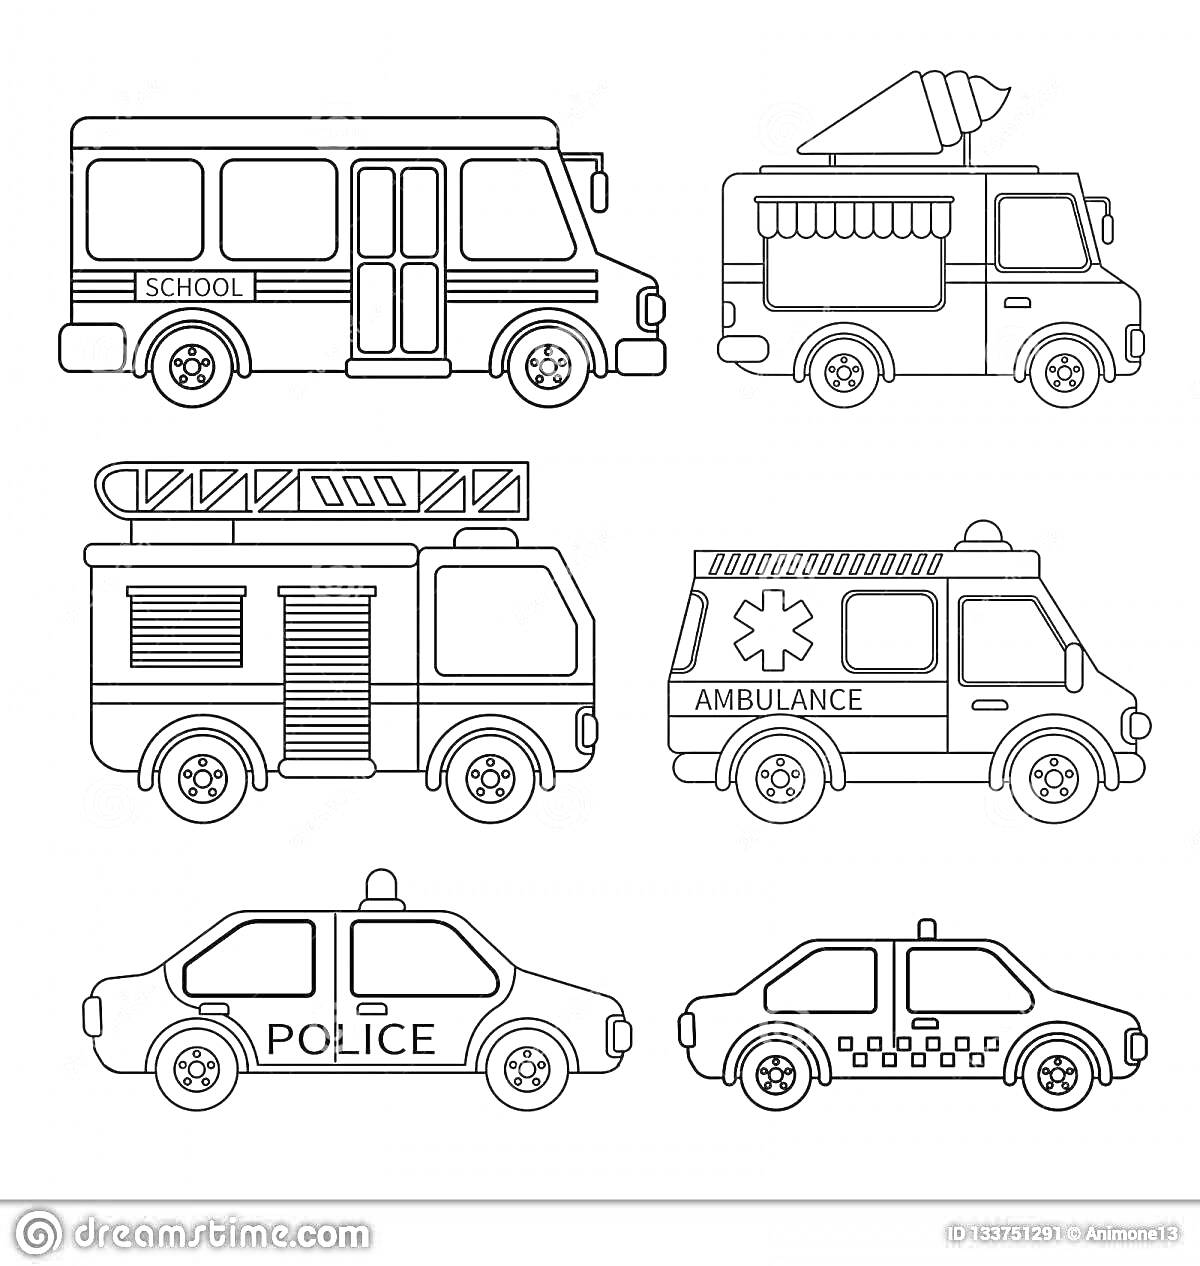 На раскраске изображено: Школьный автобус, Фургон с мороженым, Пожарная машина, Скорая помощь, Такси, Транспорт, Спецтранспорт